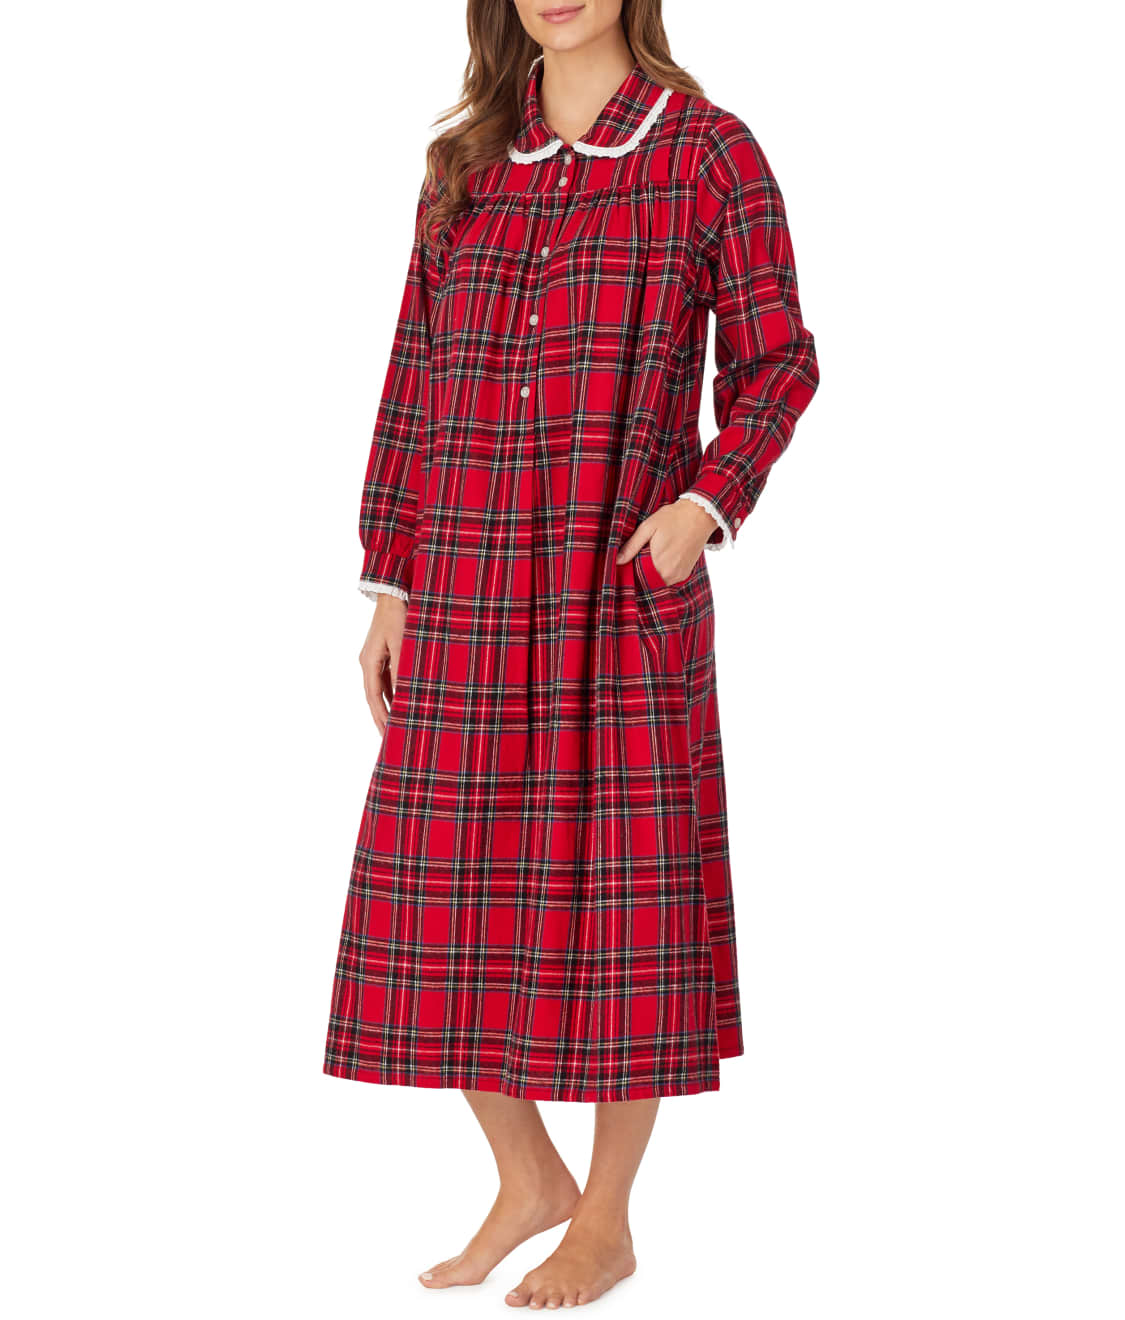 Lanz of Salzburg: Red Tartan Flannel Nightgown CL5616839-RE